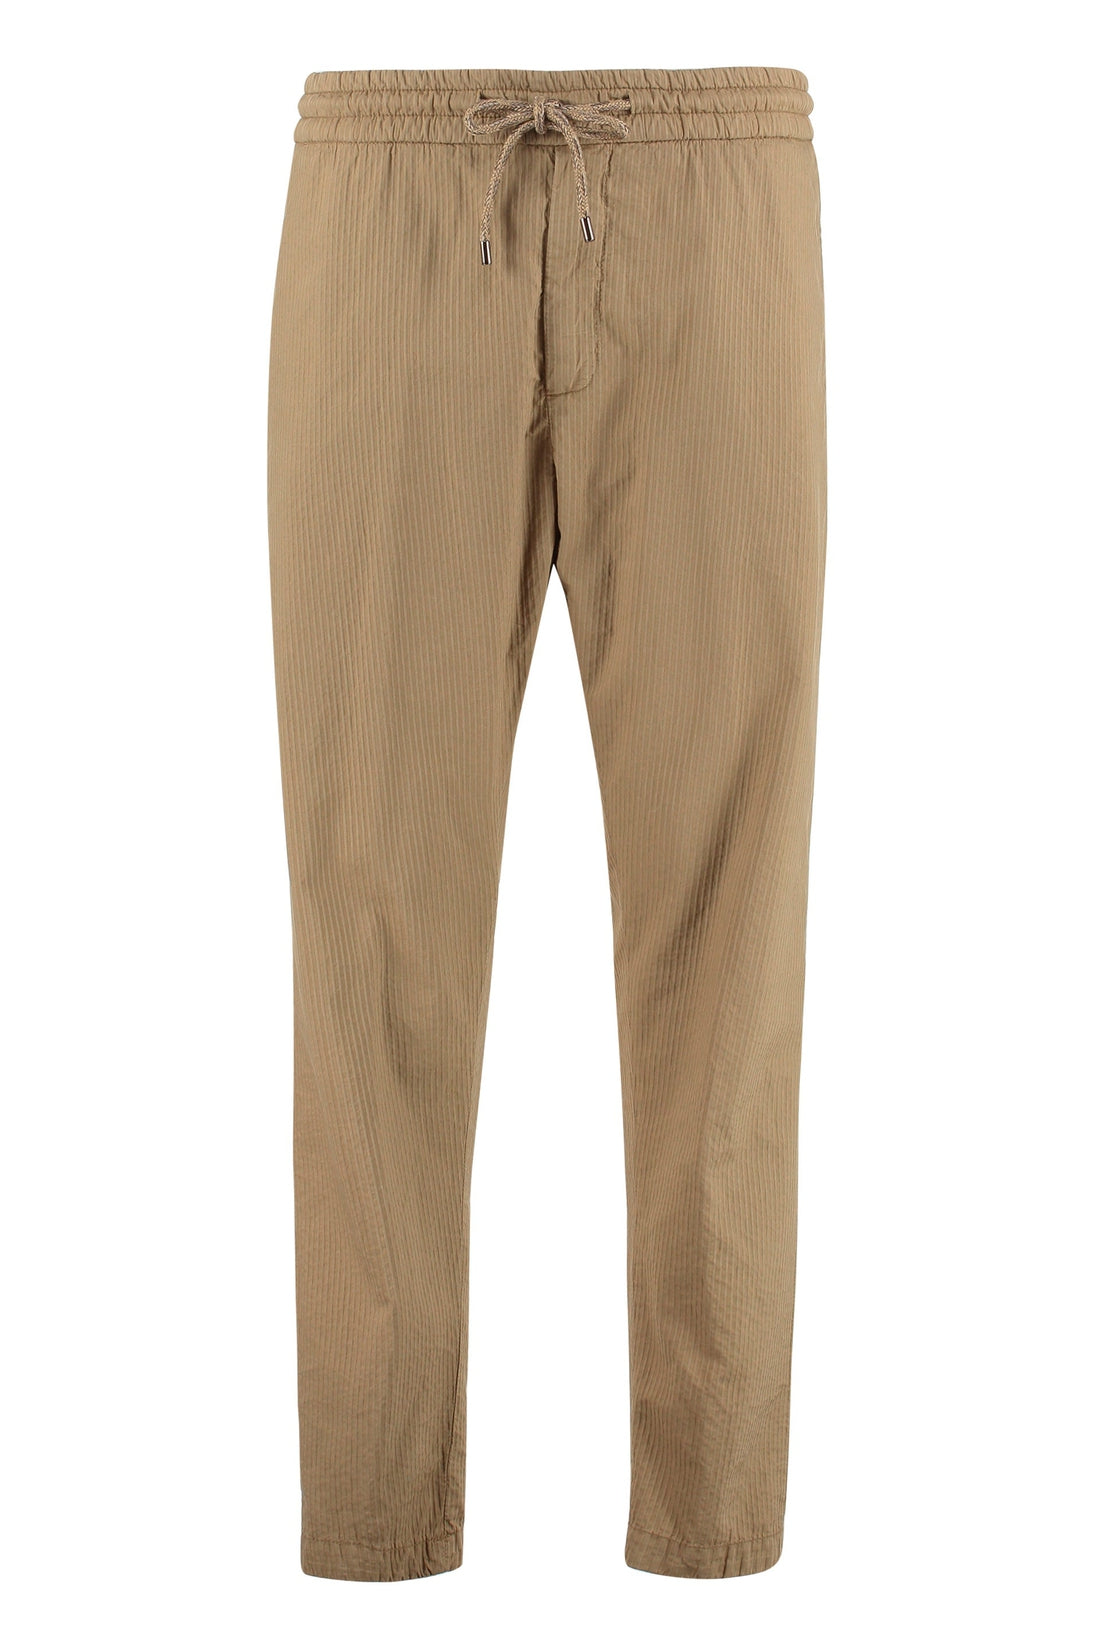 Dondup-OUTLET-SALE-Dom cotton trousers-ARCHIVIST